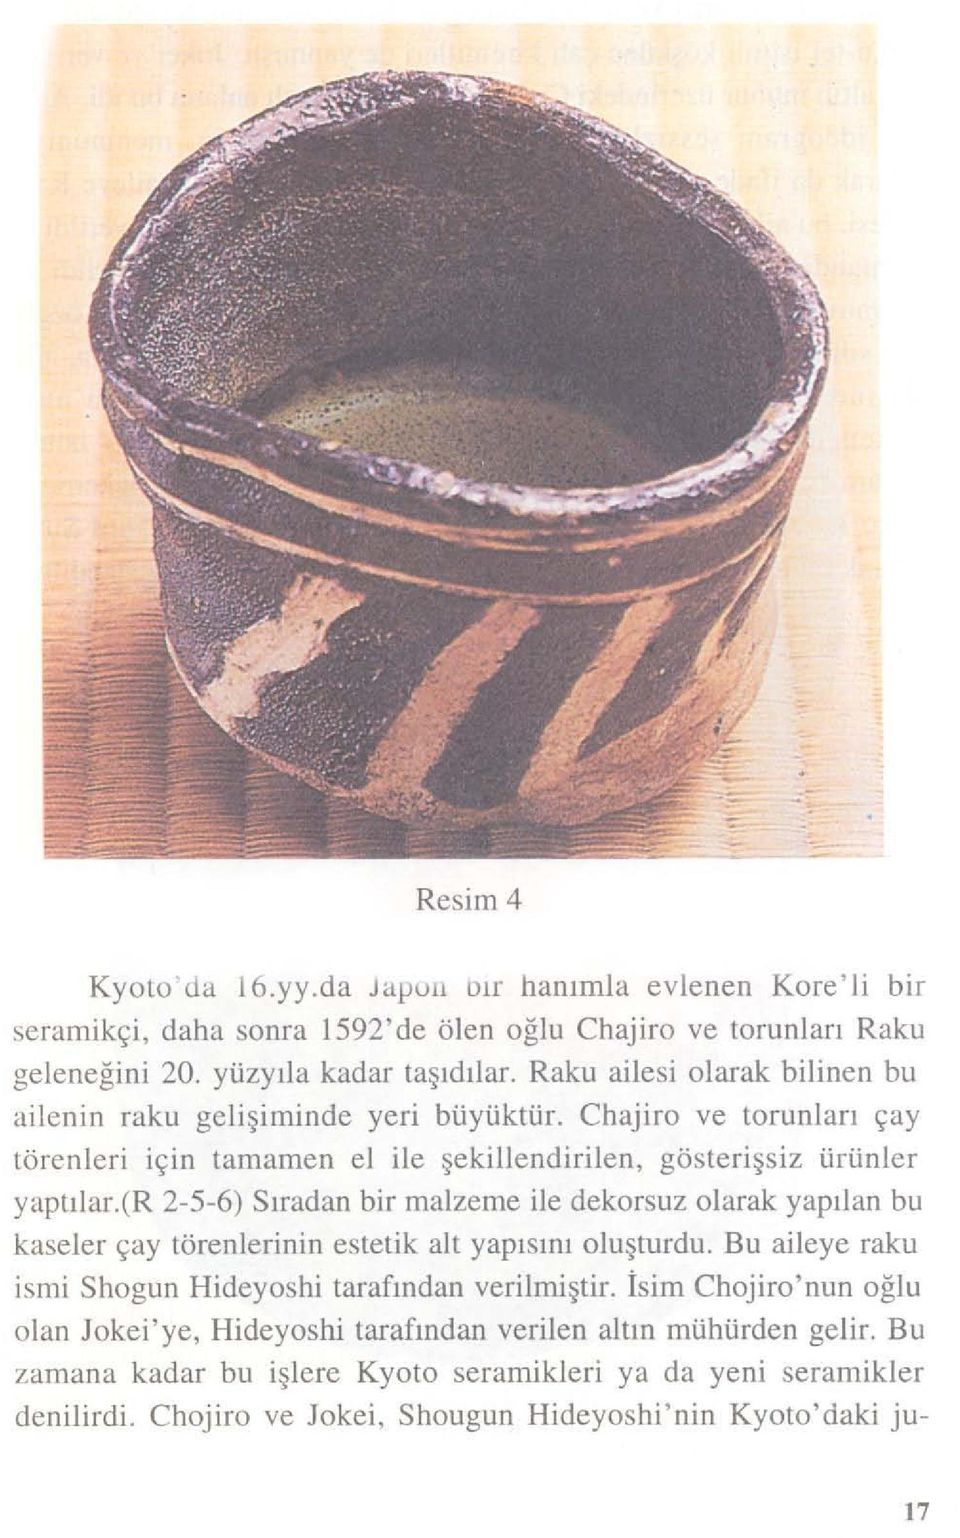 (r 2-5-6) Sıradan bir malzeme ile dekorsuz olarak yapılan bu kaseler çay törenlerinin estetik alt yapı sm ı oluşturdu. Bu aileye raku ismi Shogun Hideyoshi tarafından verilmiştir.